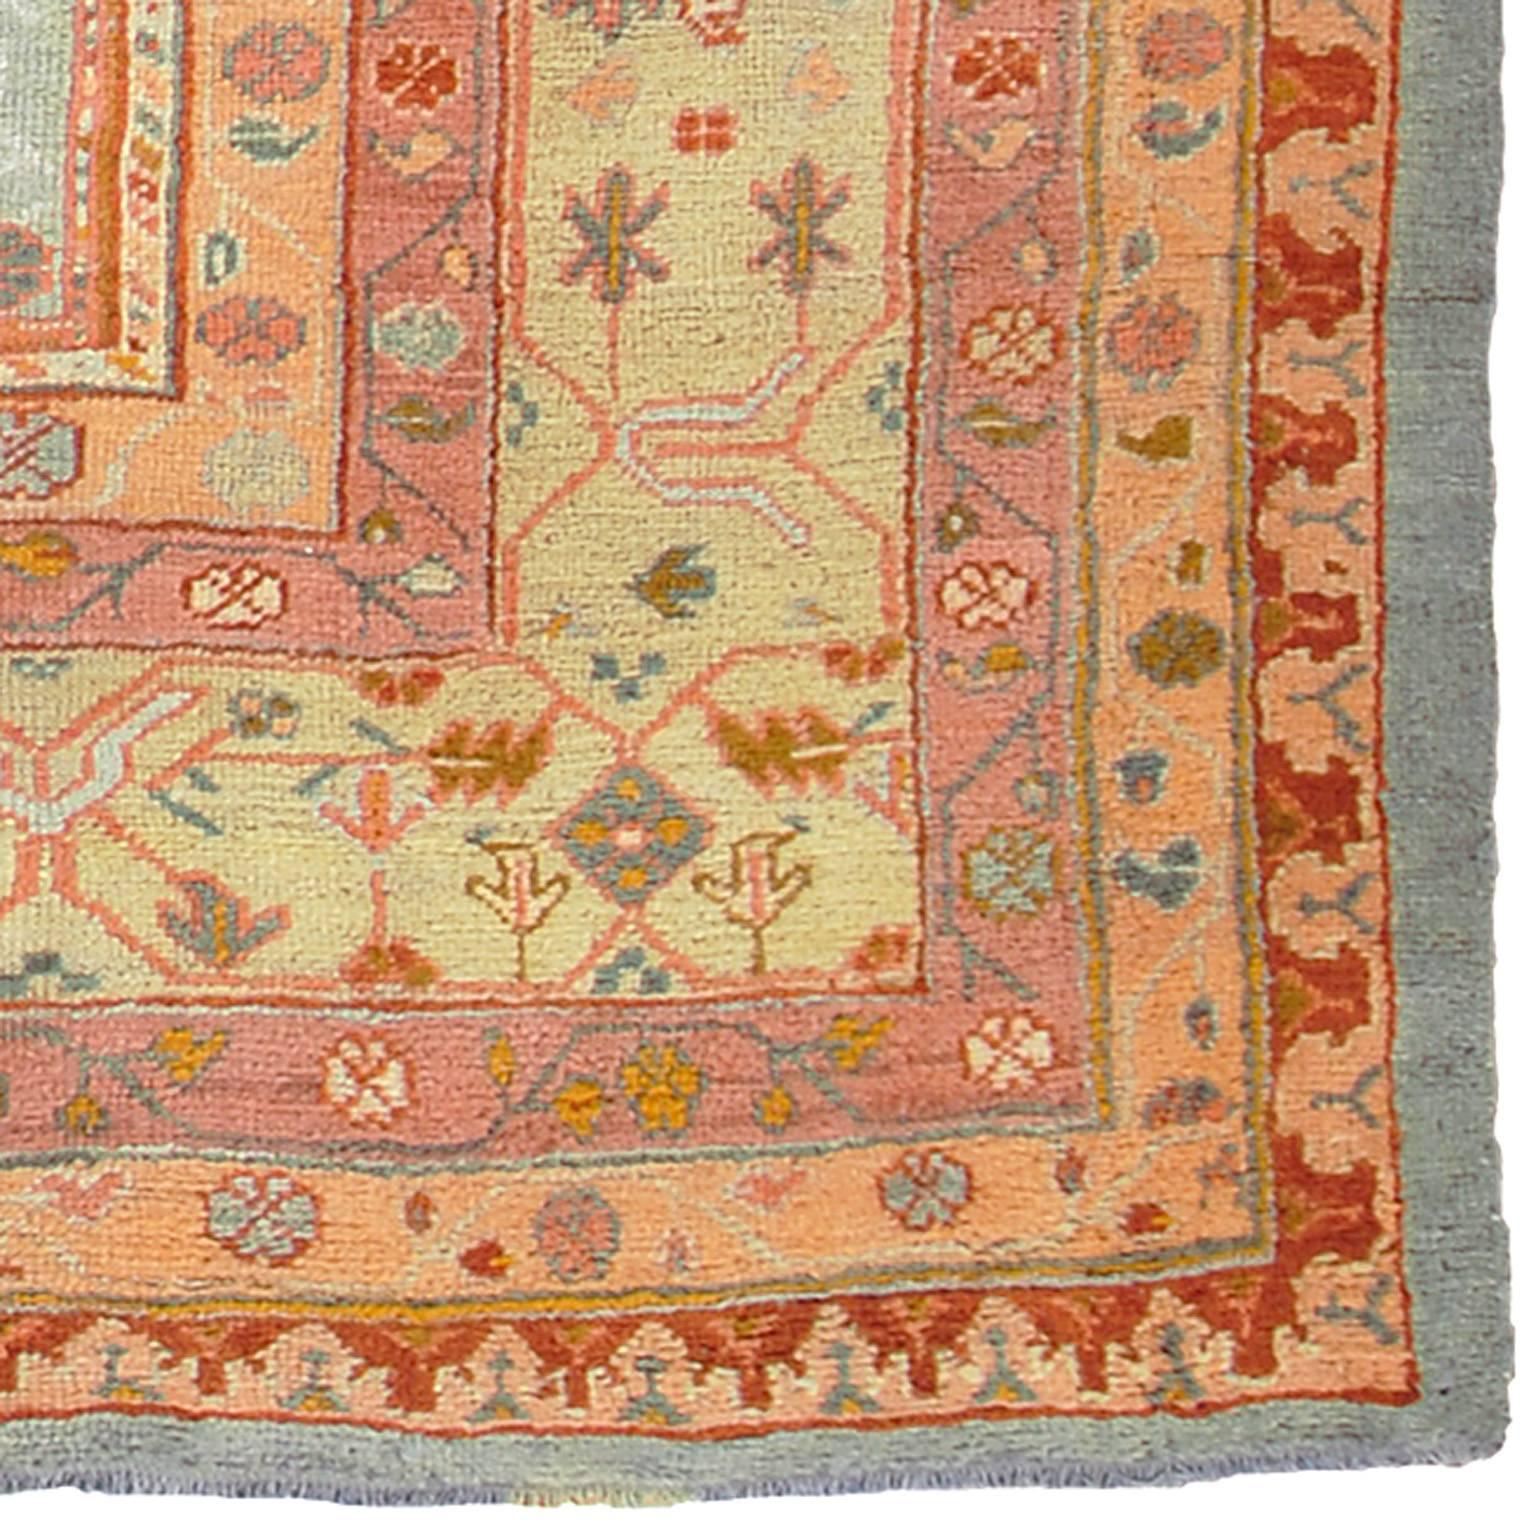 Late 19th century Oushak carpet. Provenance: Herrgard utanfor Gavle.